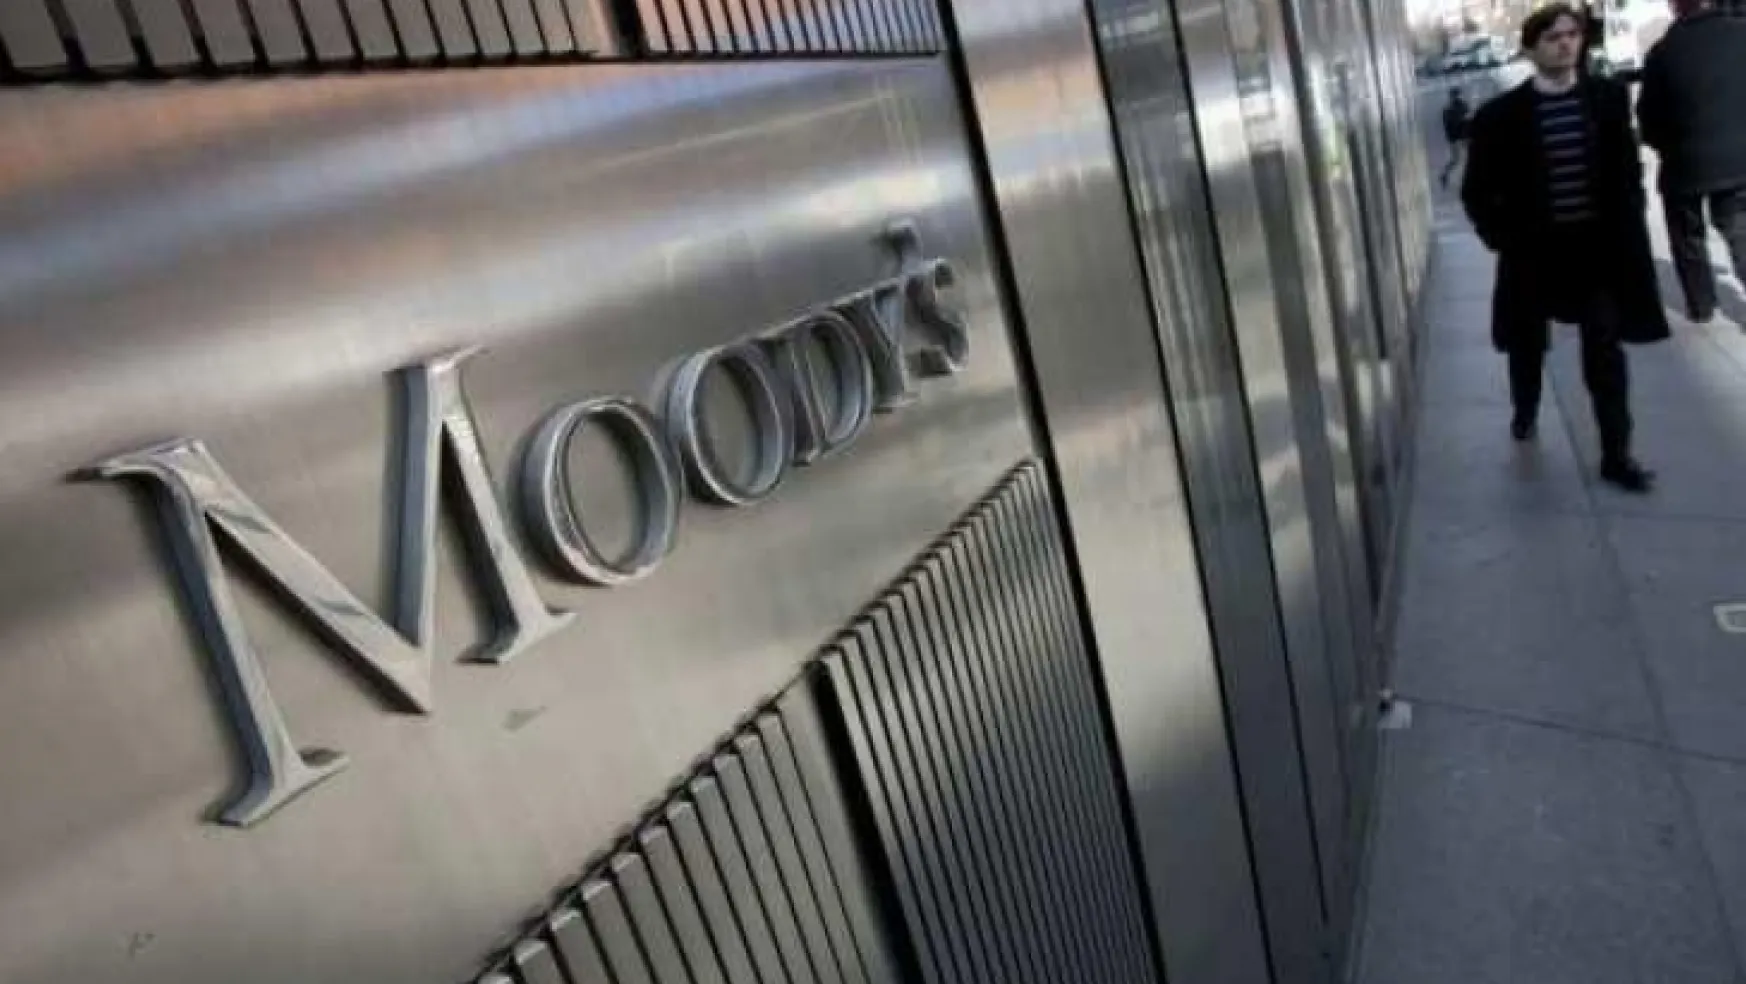 Moody's'ten Türkiye'ye 'mali çıpa' övgüsü